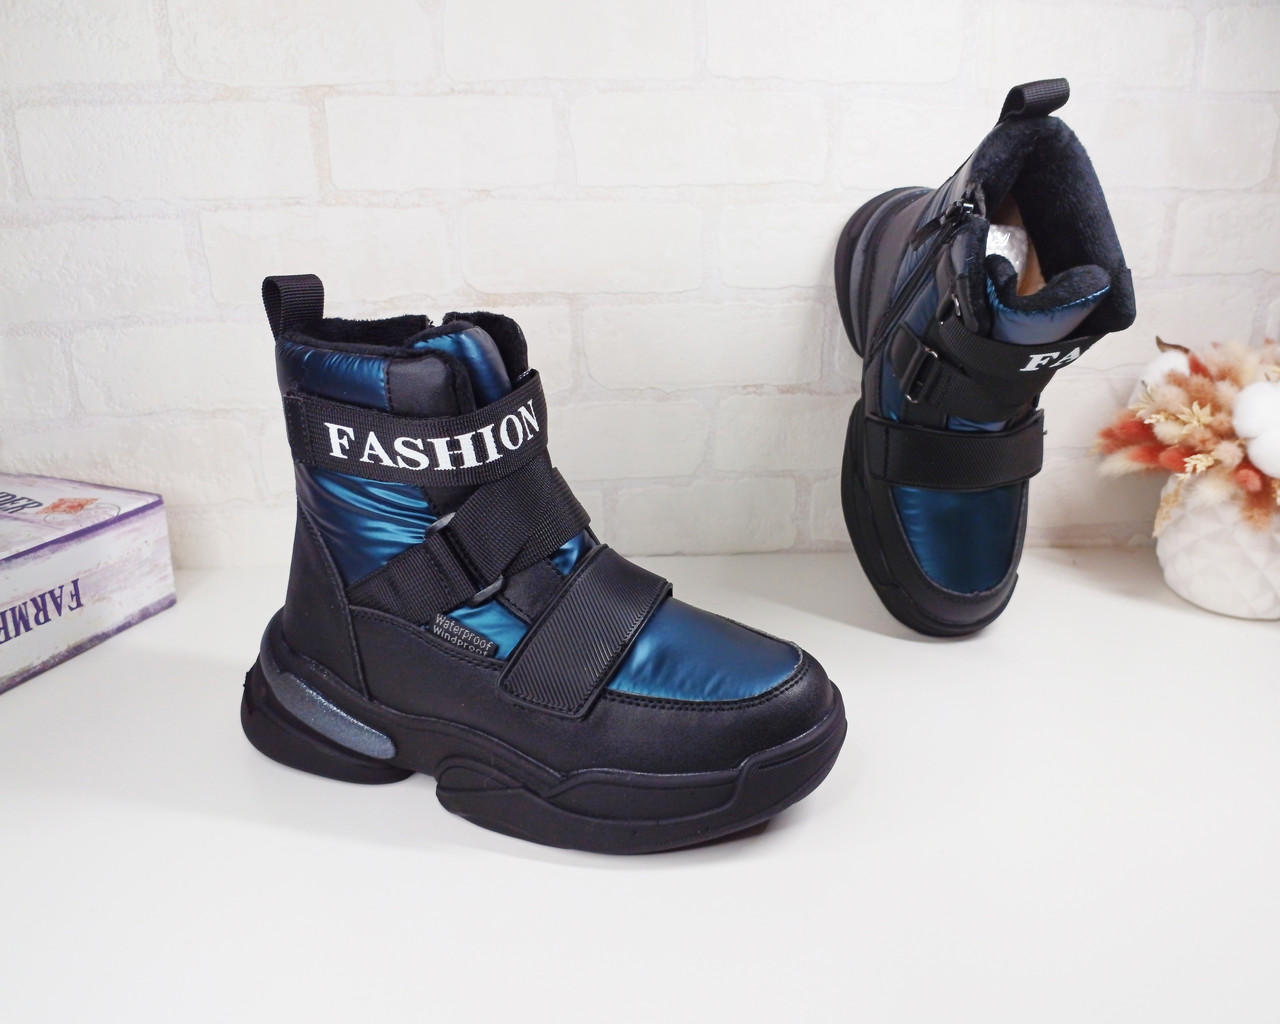 Дитячі зимові черевики дутики 34 36 36 Том.м для дівчинки хамелеон сині чорні чоботи